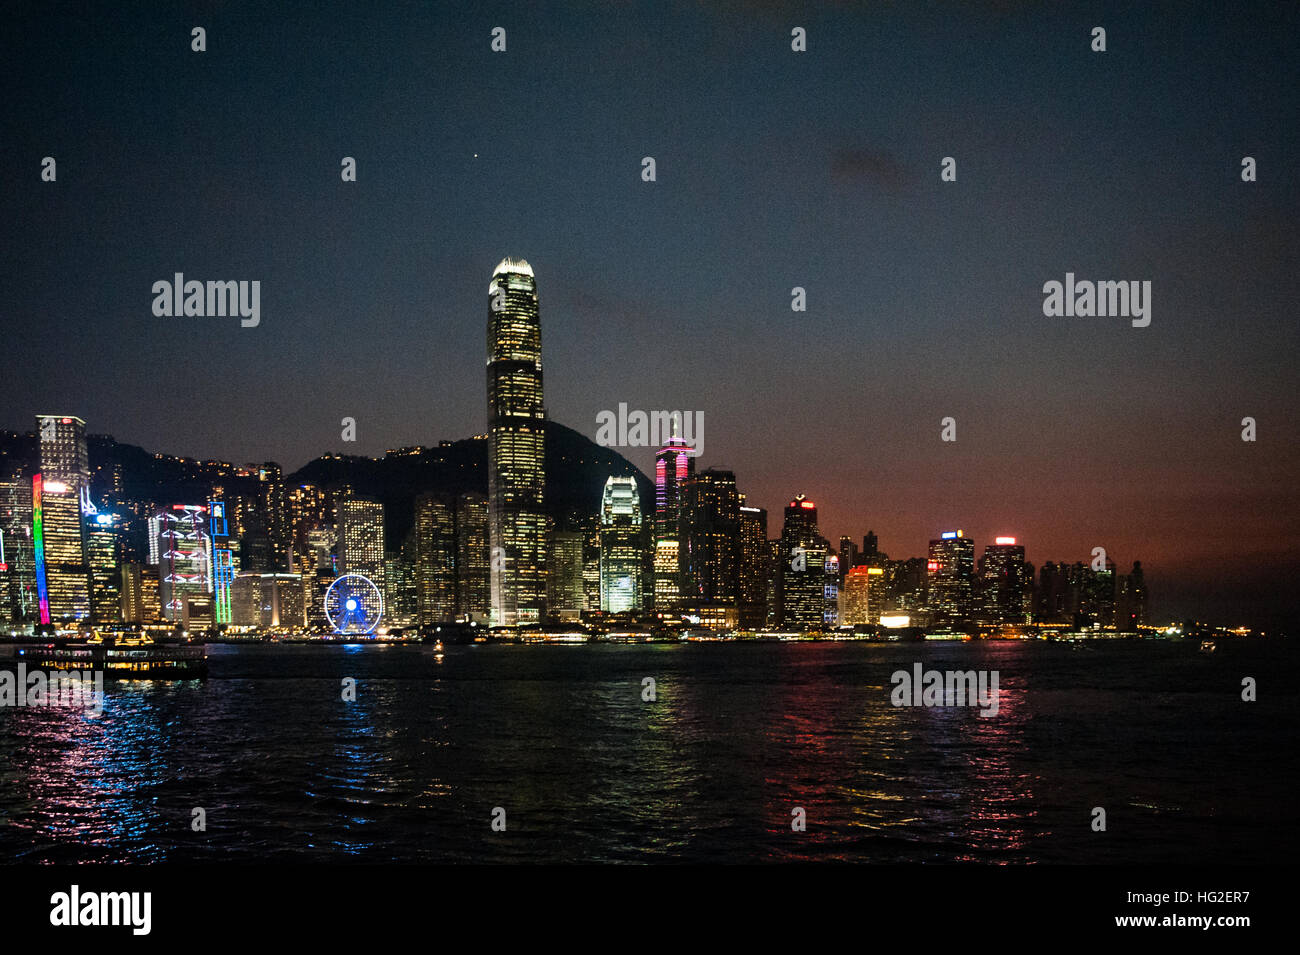 Hong Kong skyline at night Stock Photo